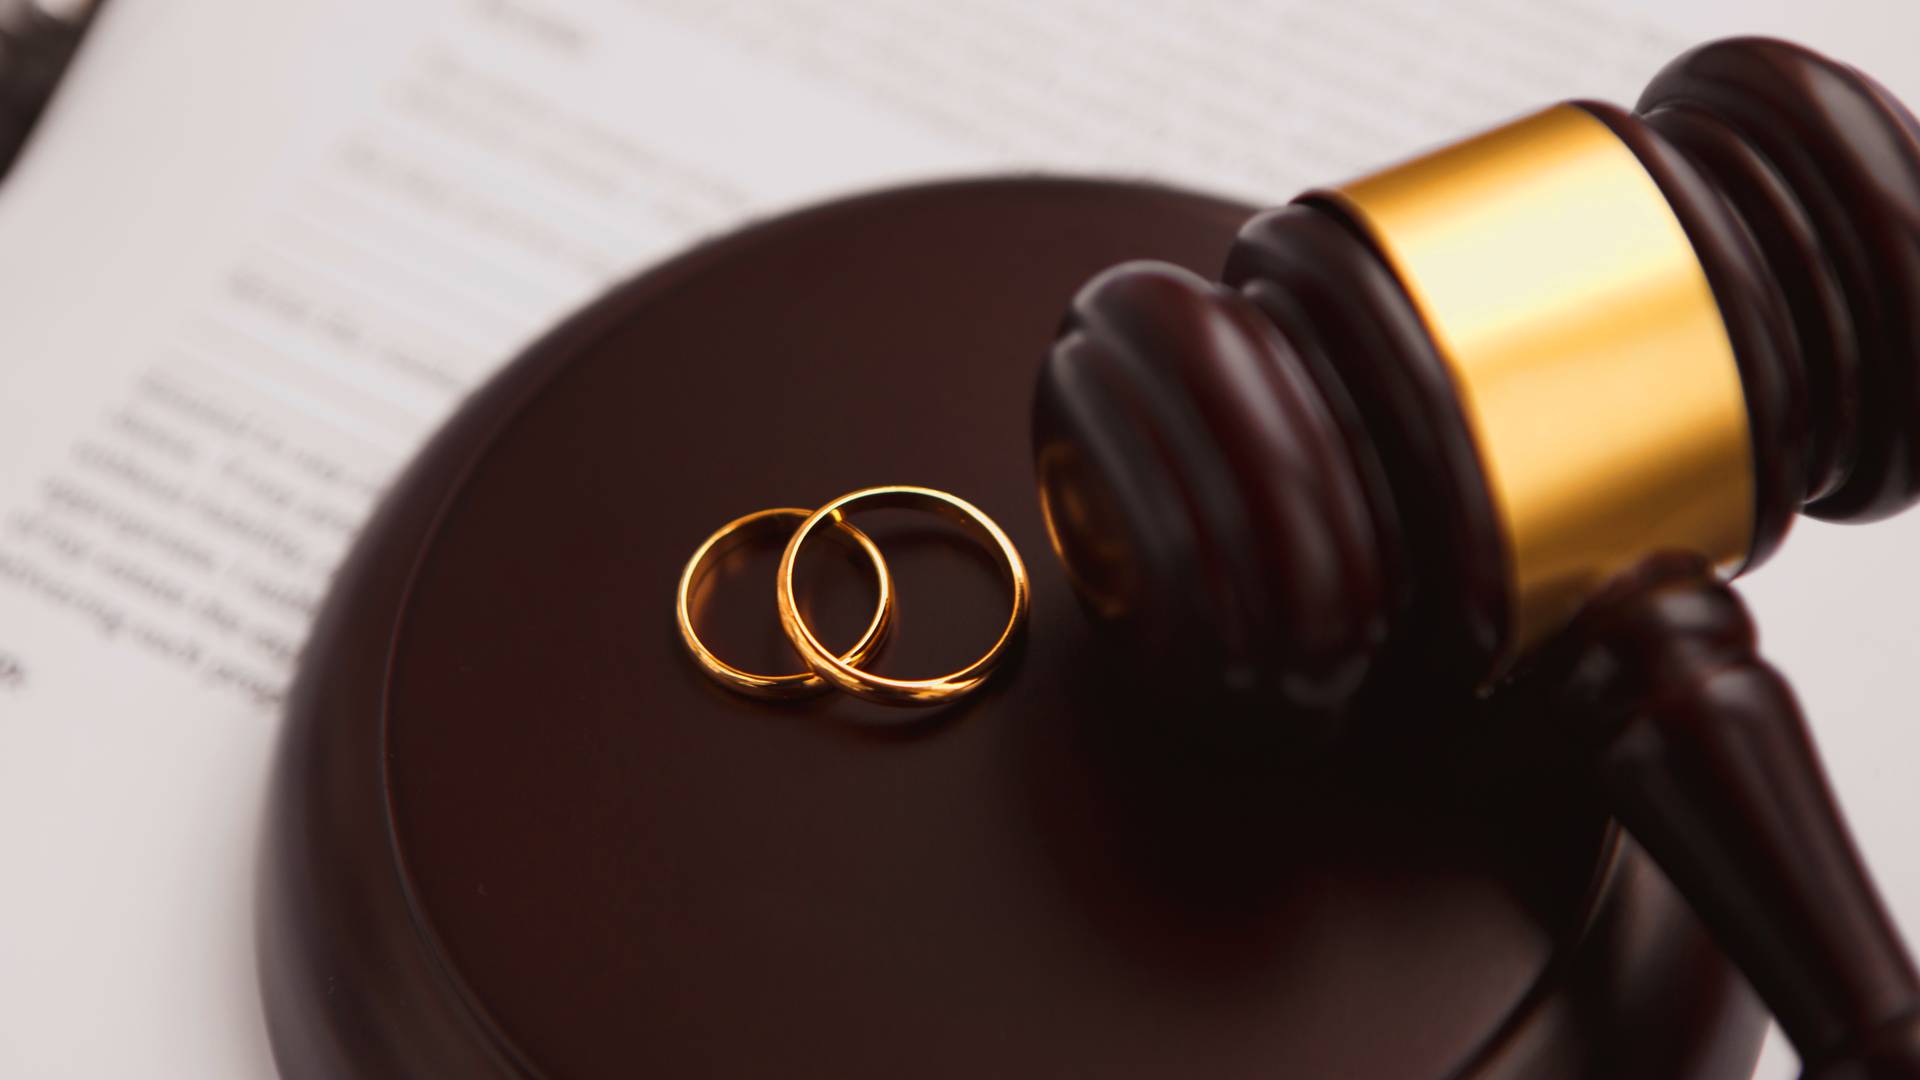 obrączki małżeńców obok młotka sędziego symbolizującego rozwód